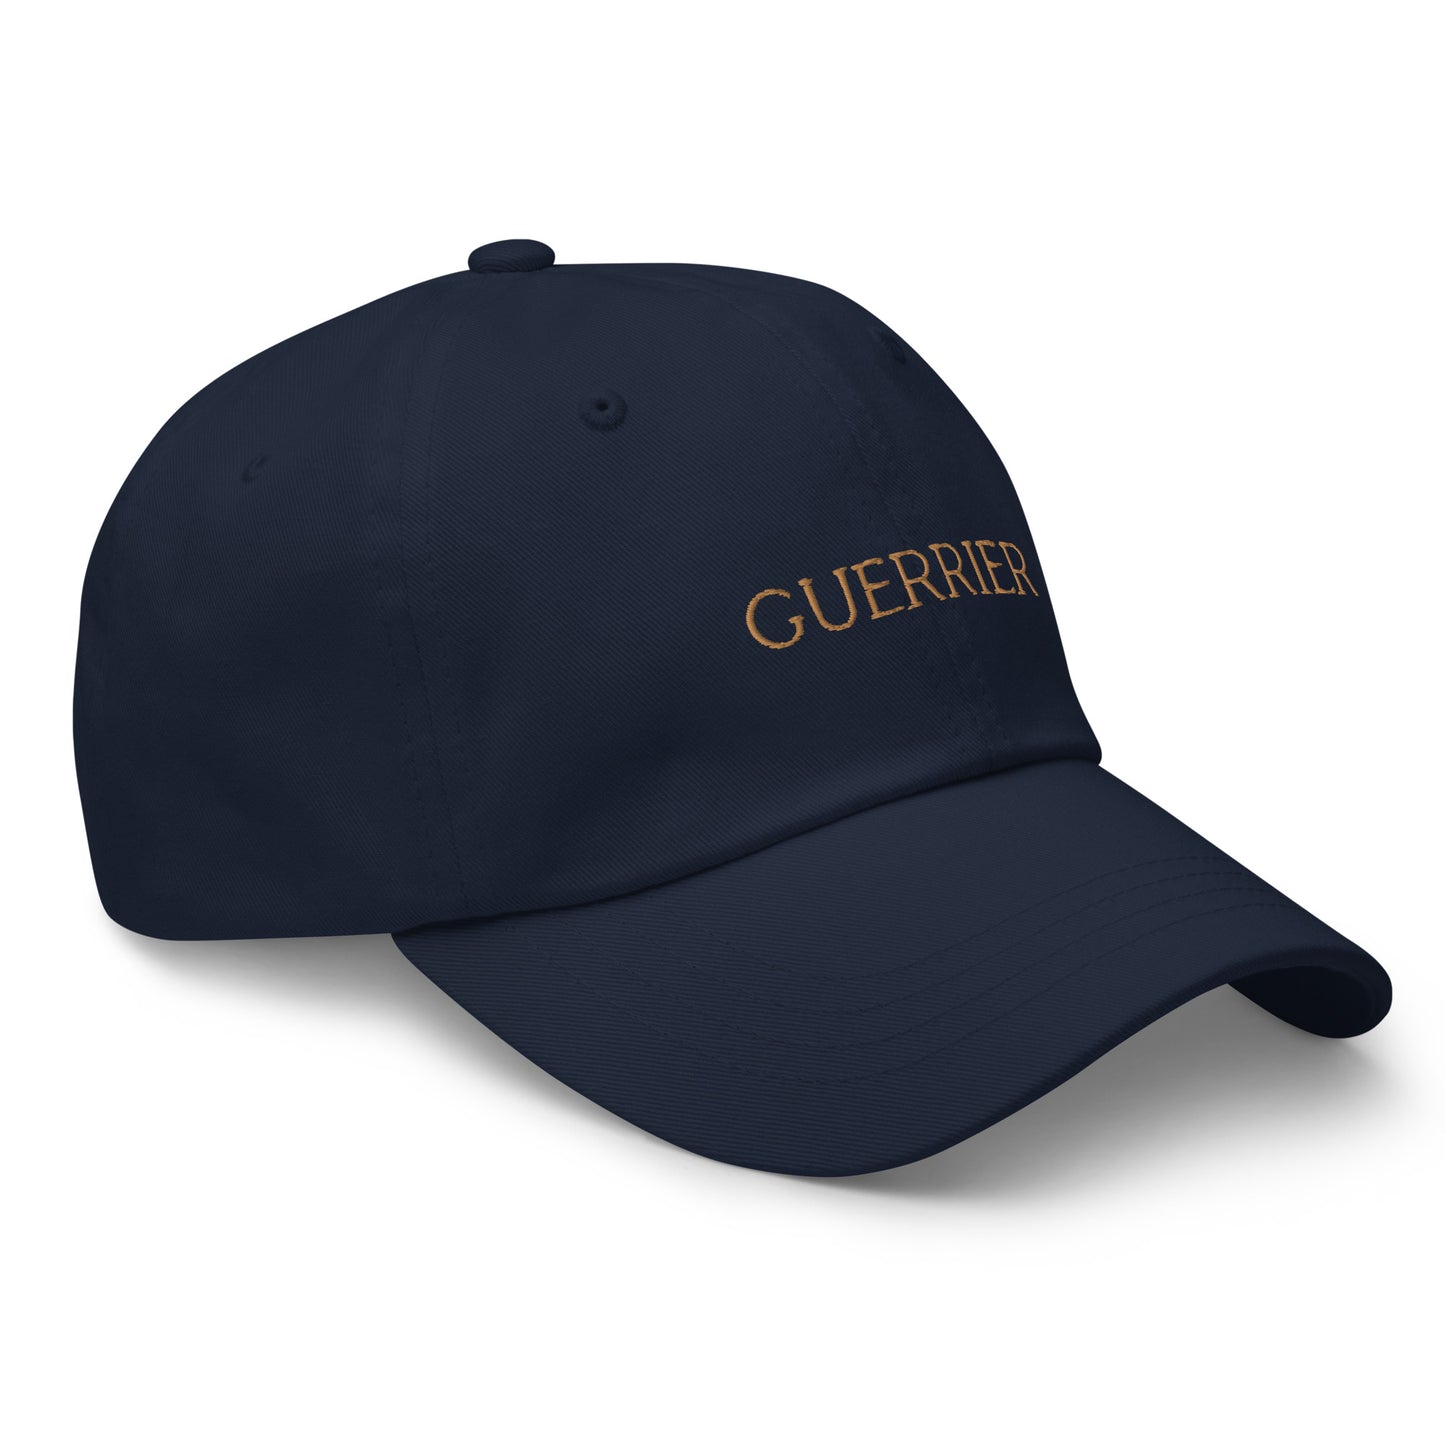 Guerrier Navy Hat